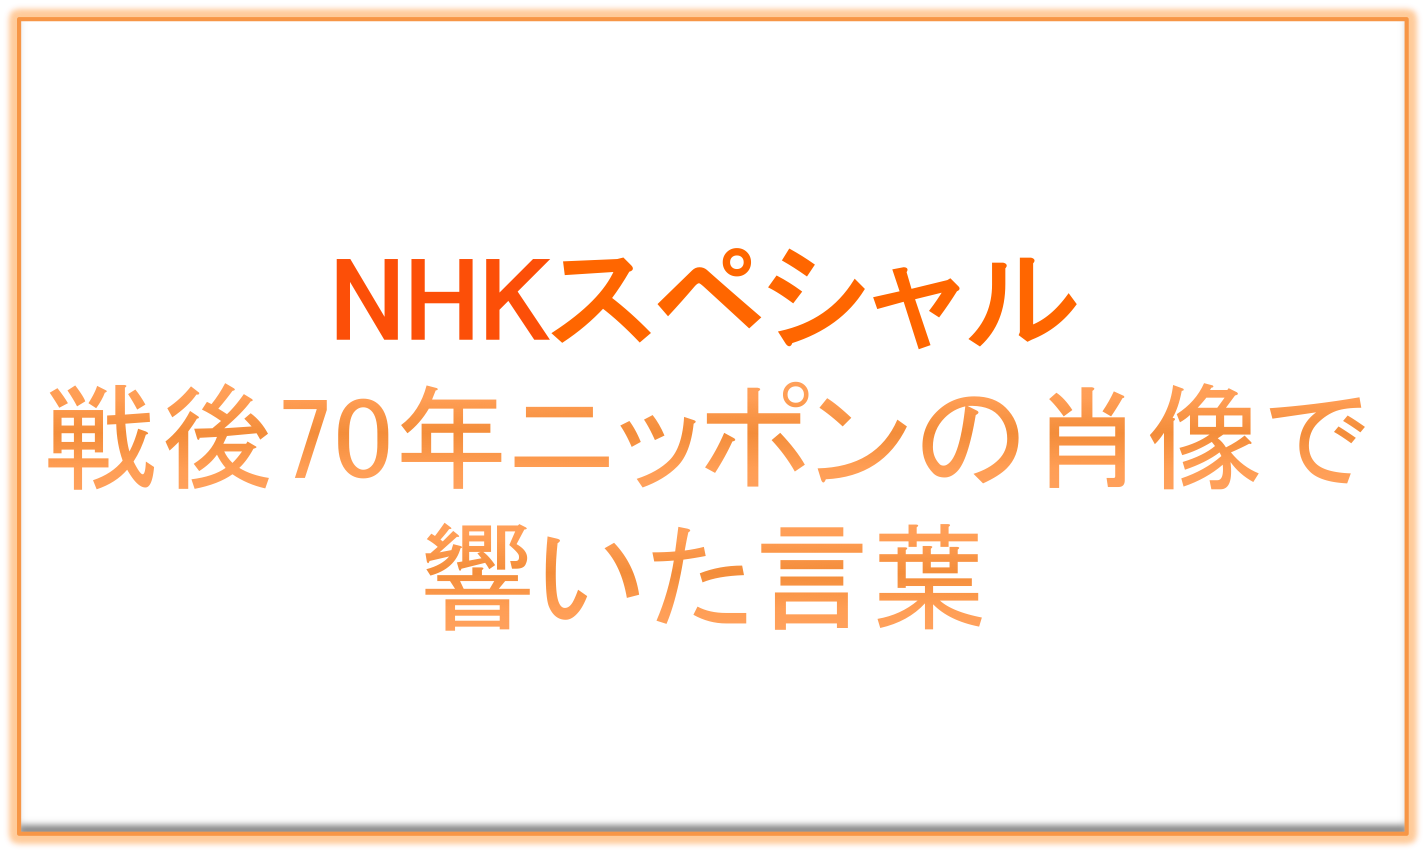 NHKスペシャル：戦後70年ニッポンの肖像で響いた言葉